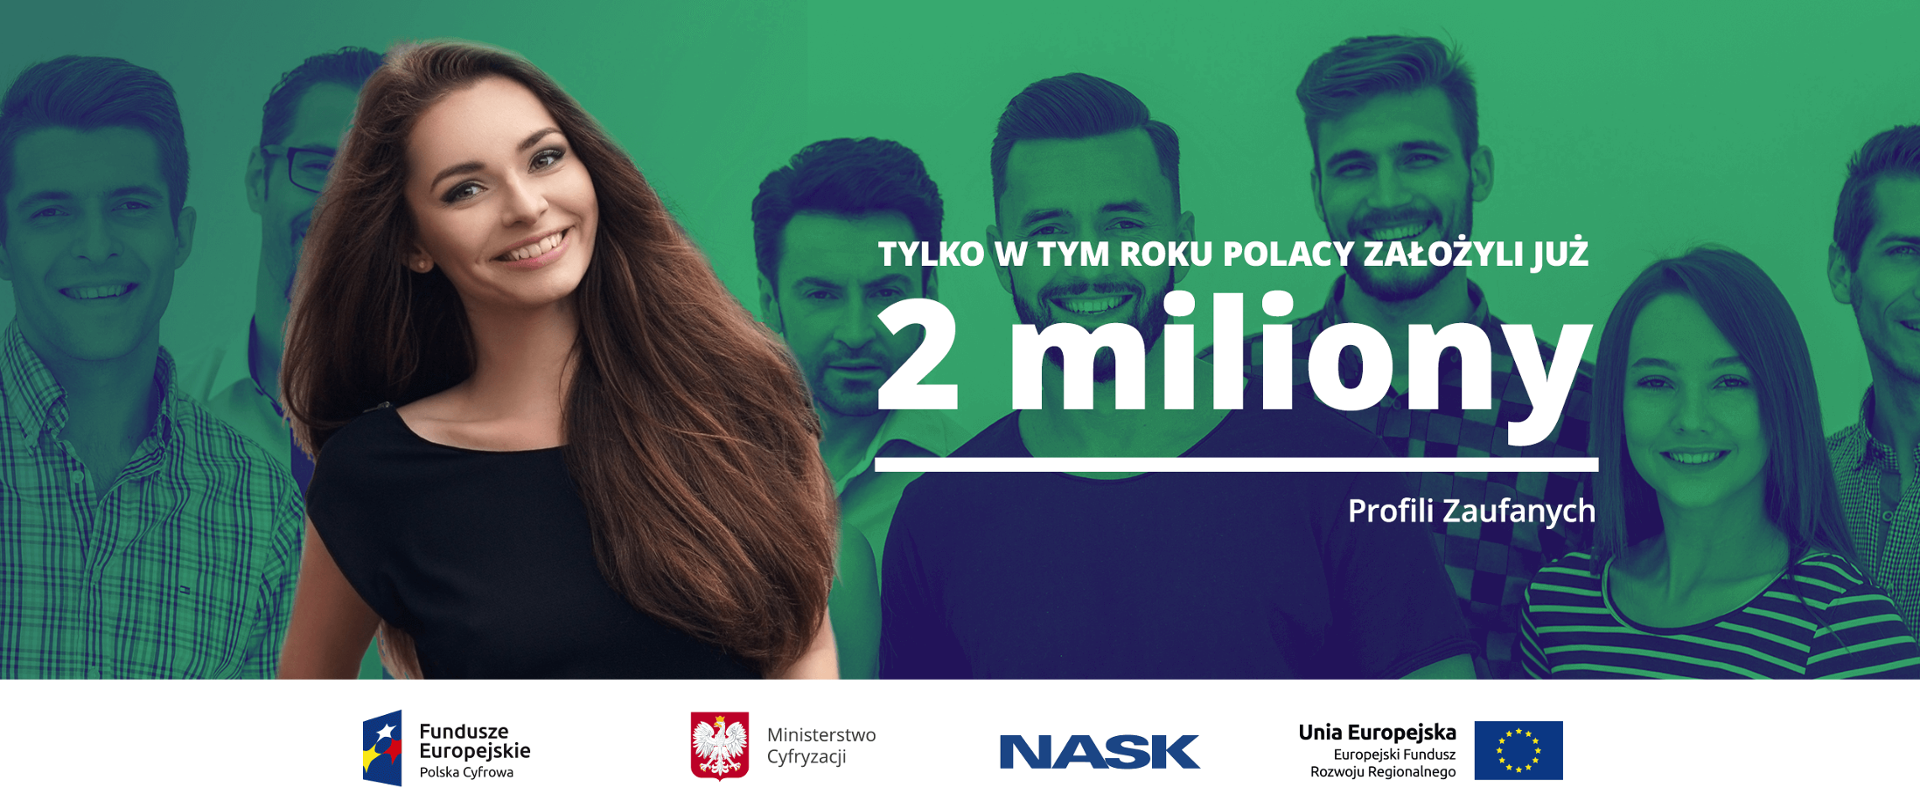 Grafika. Kilkoro uśmiechniętych ludzi. Poniżej napis: Tylko w tym roku Polacy założyli już 2 miliony profili zaufanych.